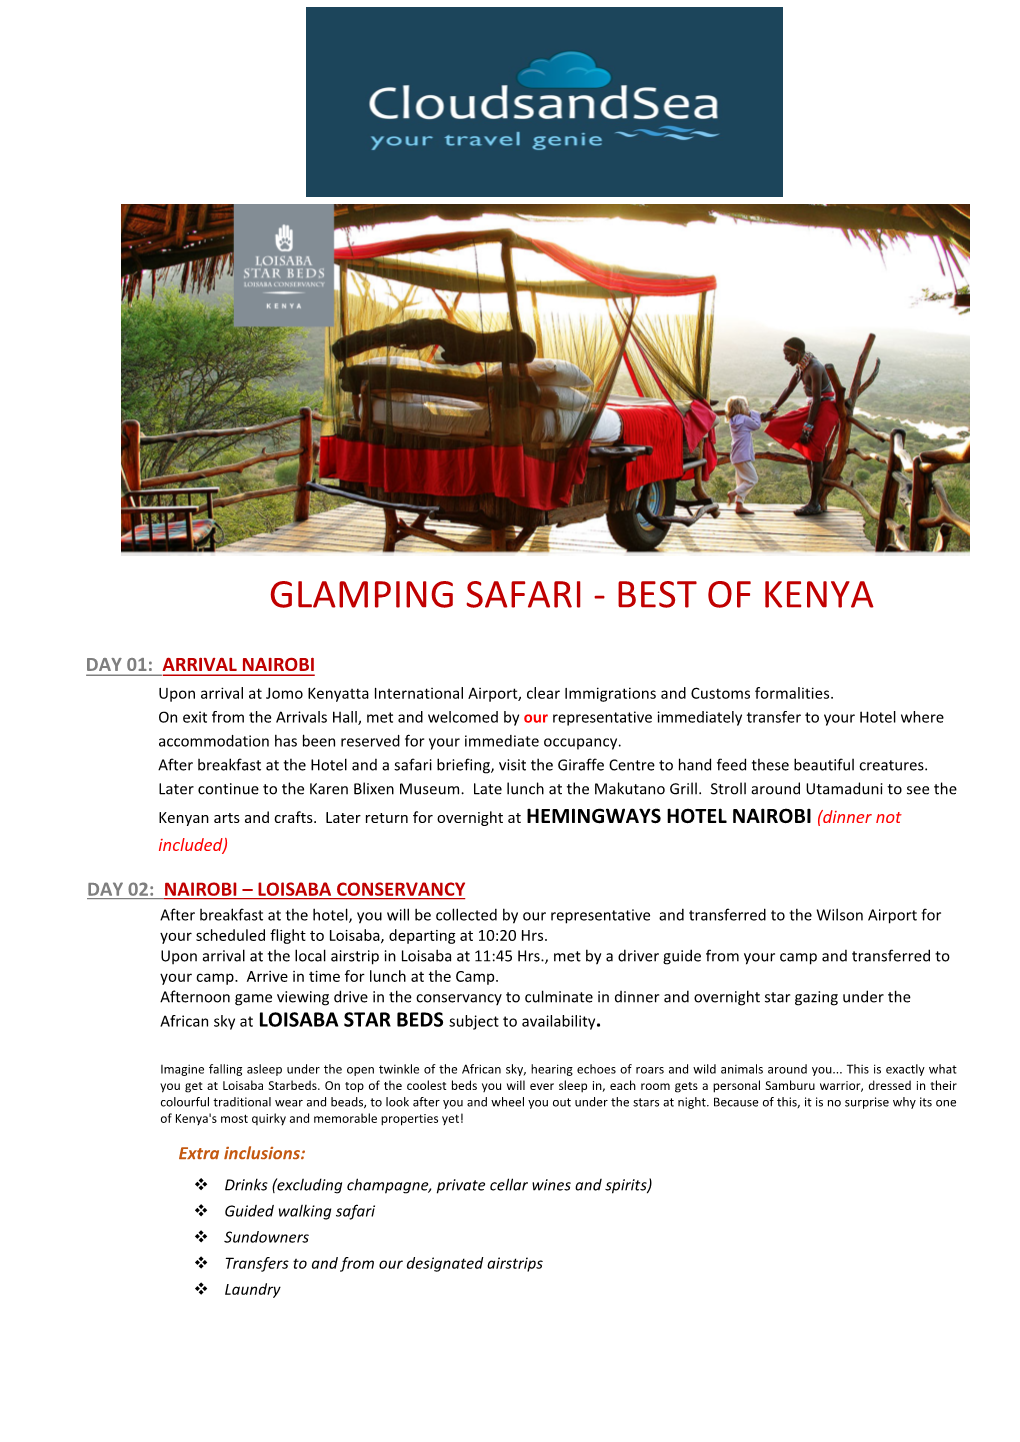 Glamping Safari - Best of Kenya